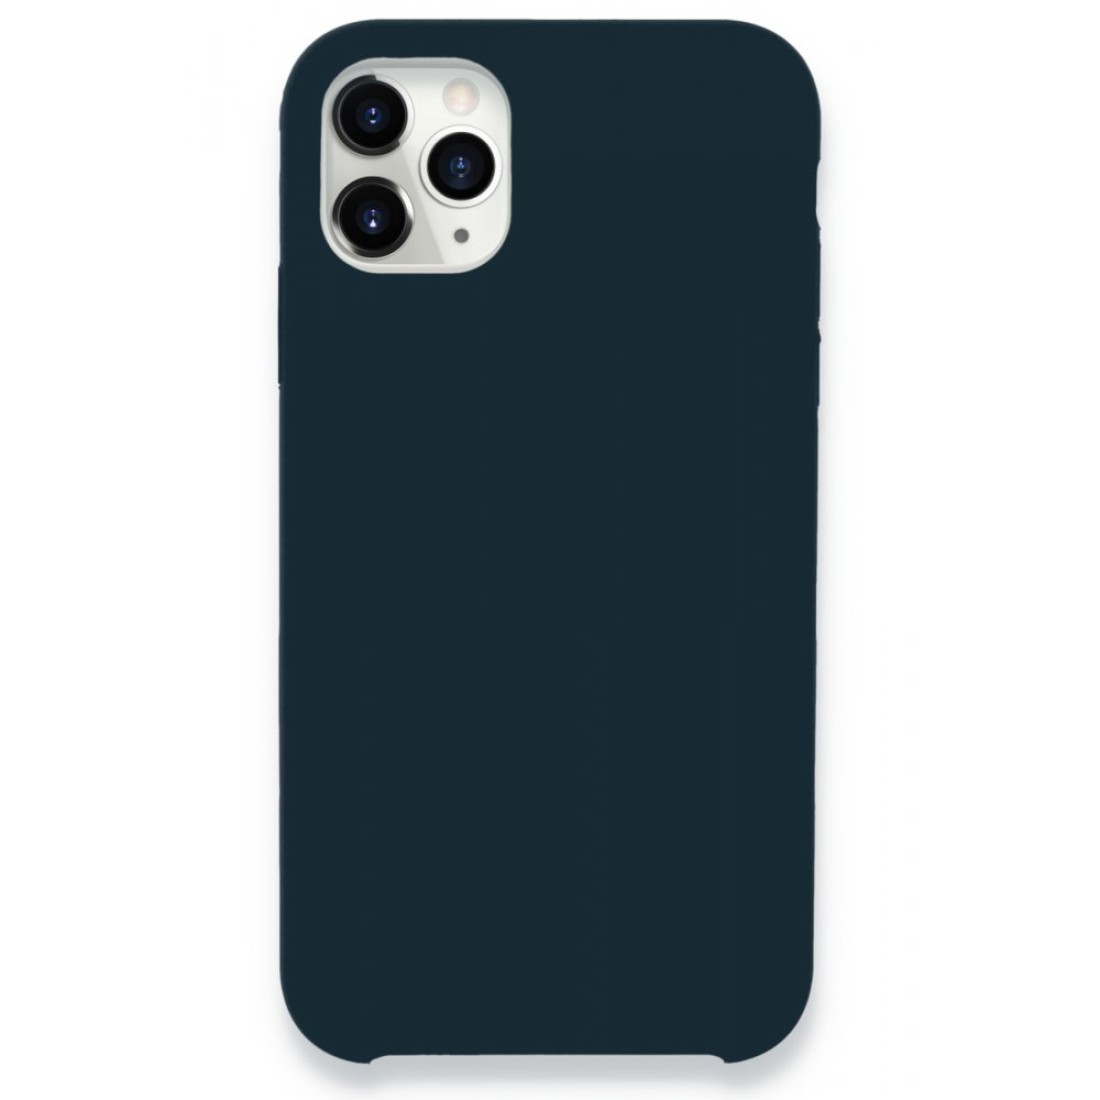 Apple iPhone 11 Pro Max Kılıf Lansman Legant Silikon - Gece Mavisi